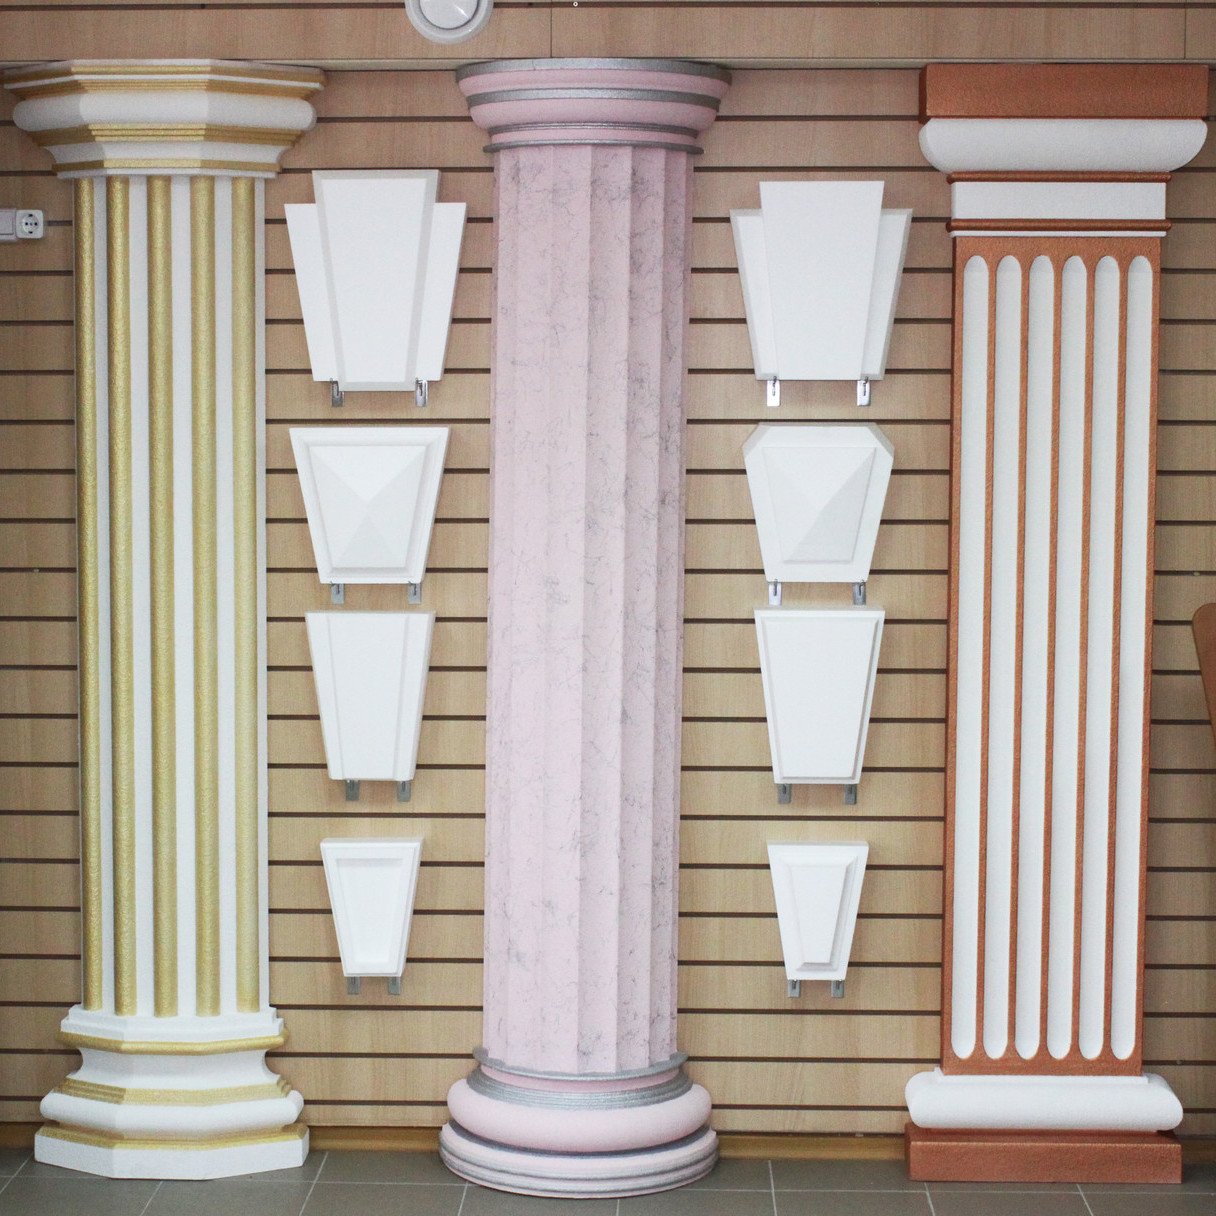 Декоративные пилястры из пенопласта — оригинальная имитация колонн